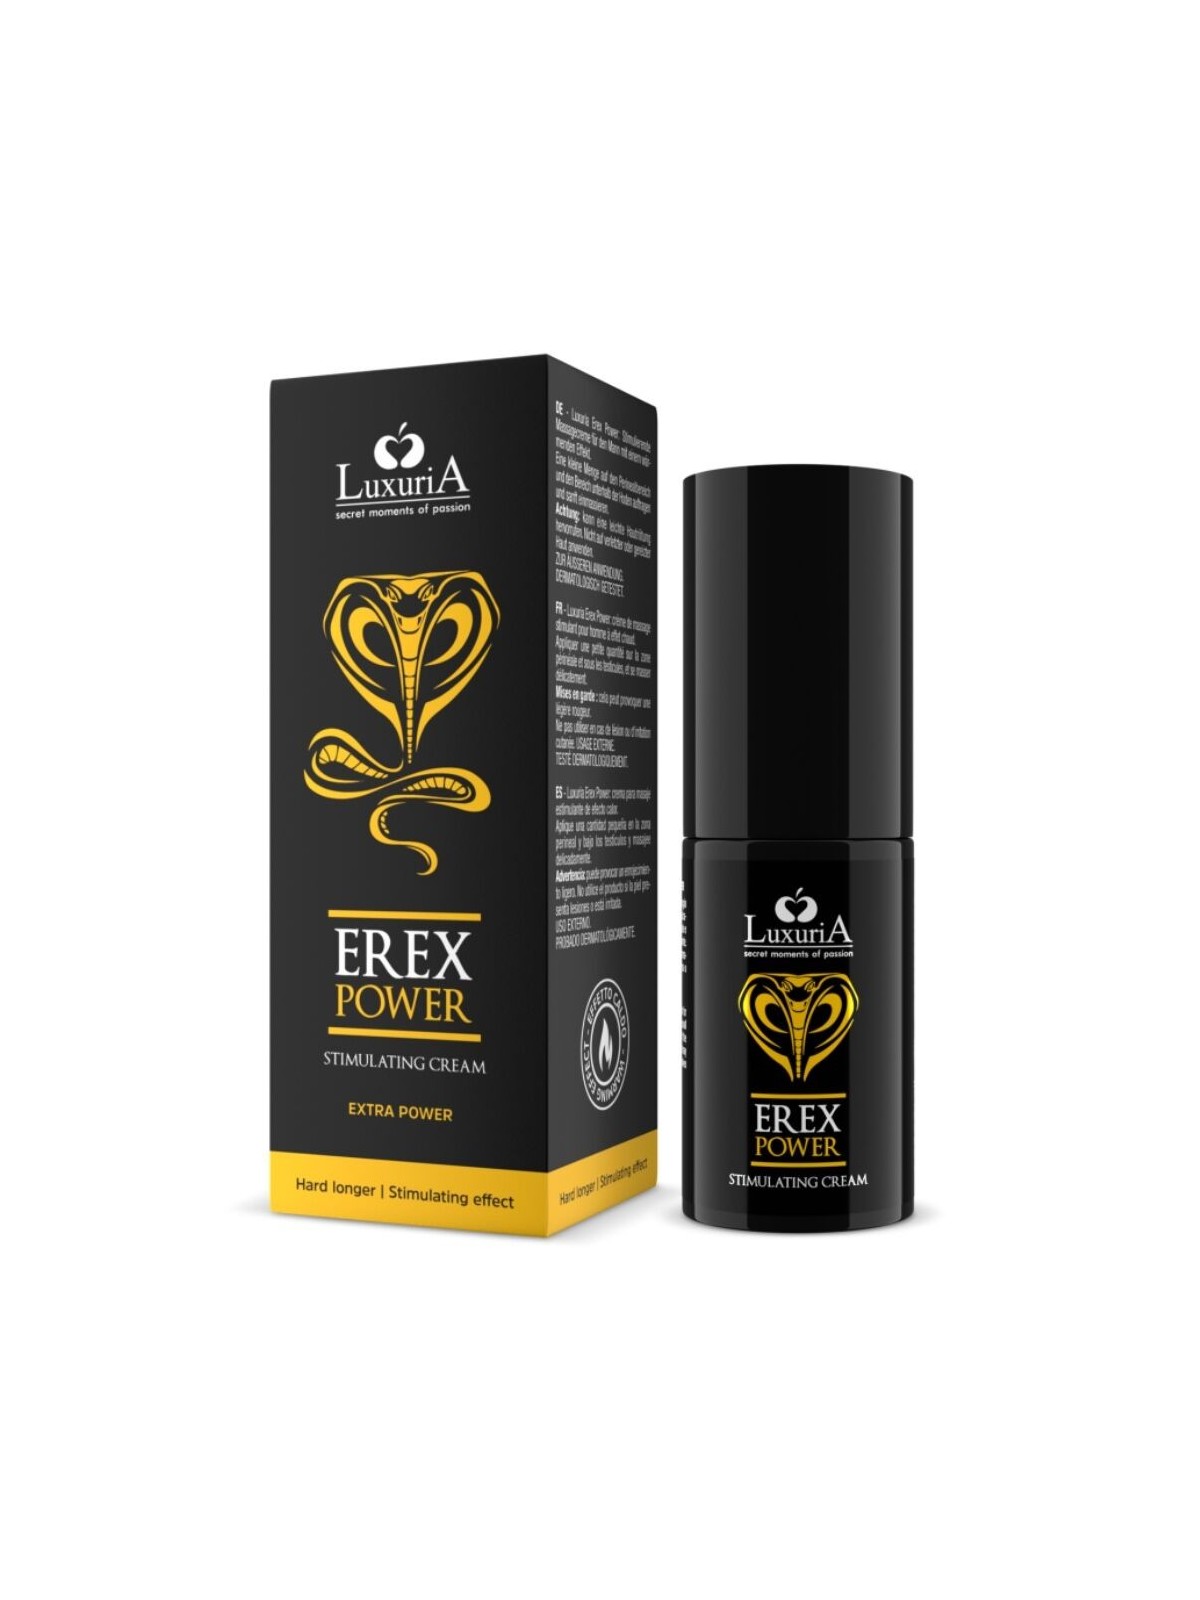 Erex Power Crema De Erección 30 ml - Comprar Potenciador erección Luxuria - Potenciadores de erección (1)